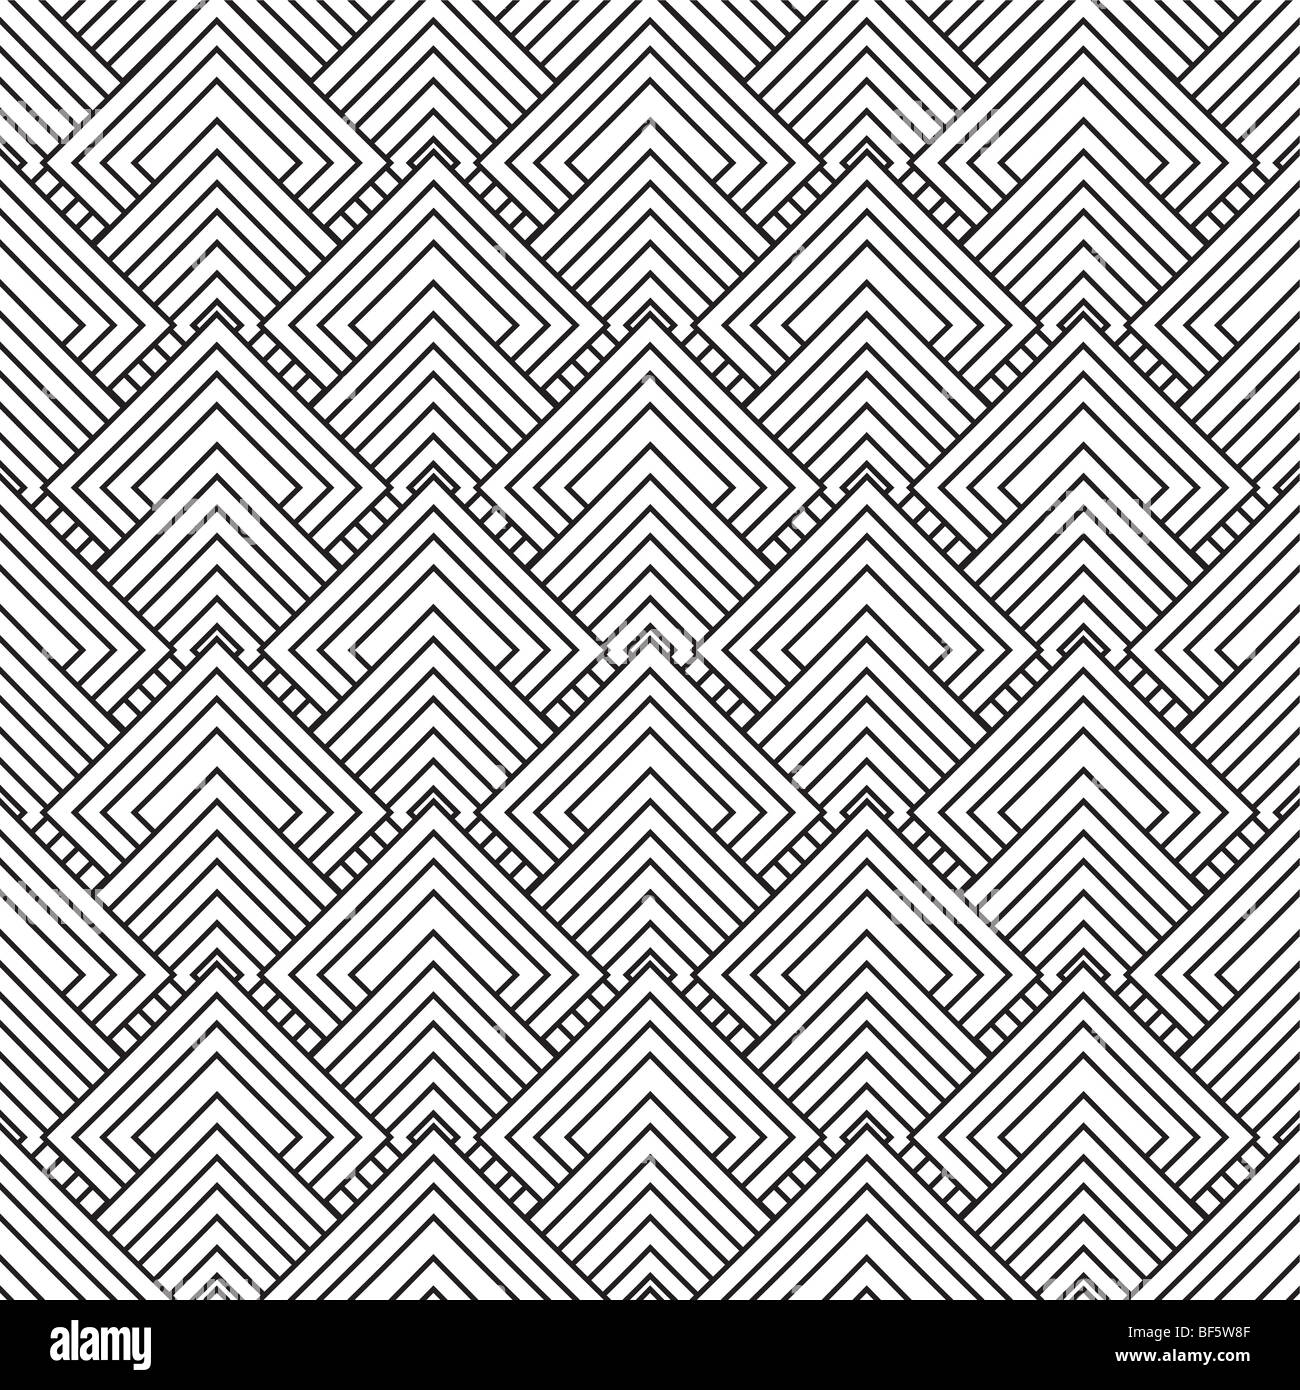 Schwarz / weiß quadratisch nahtlose Design mit Überlappung Muster